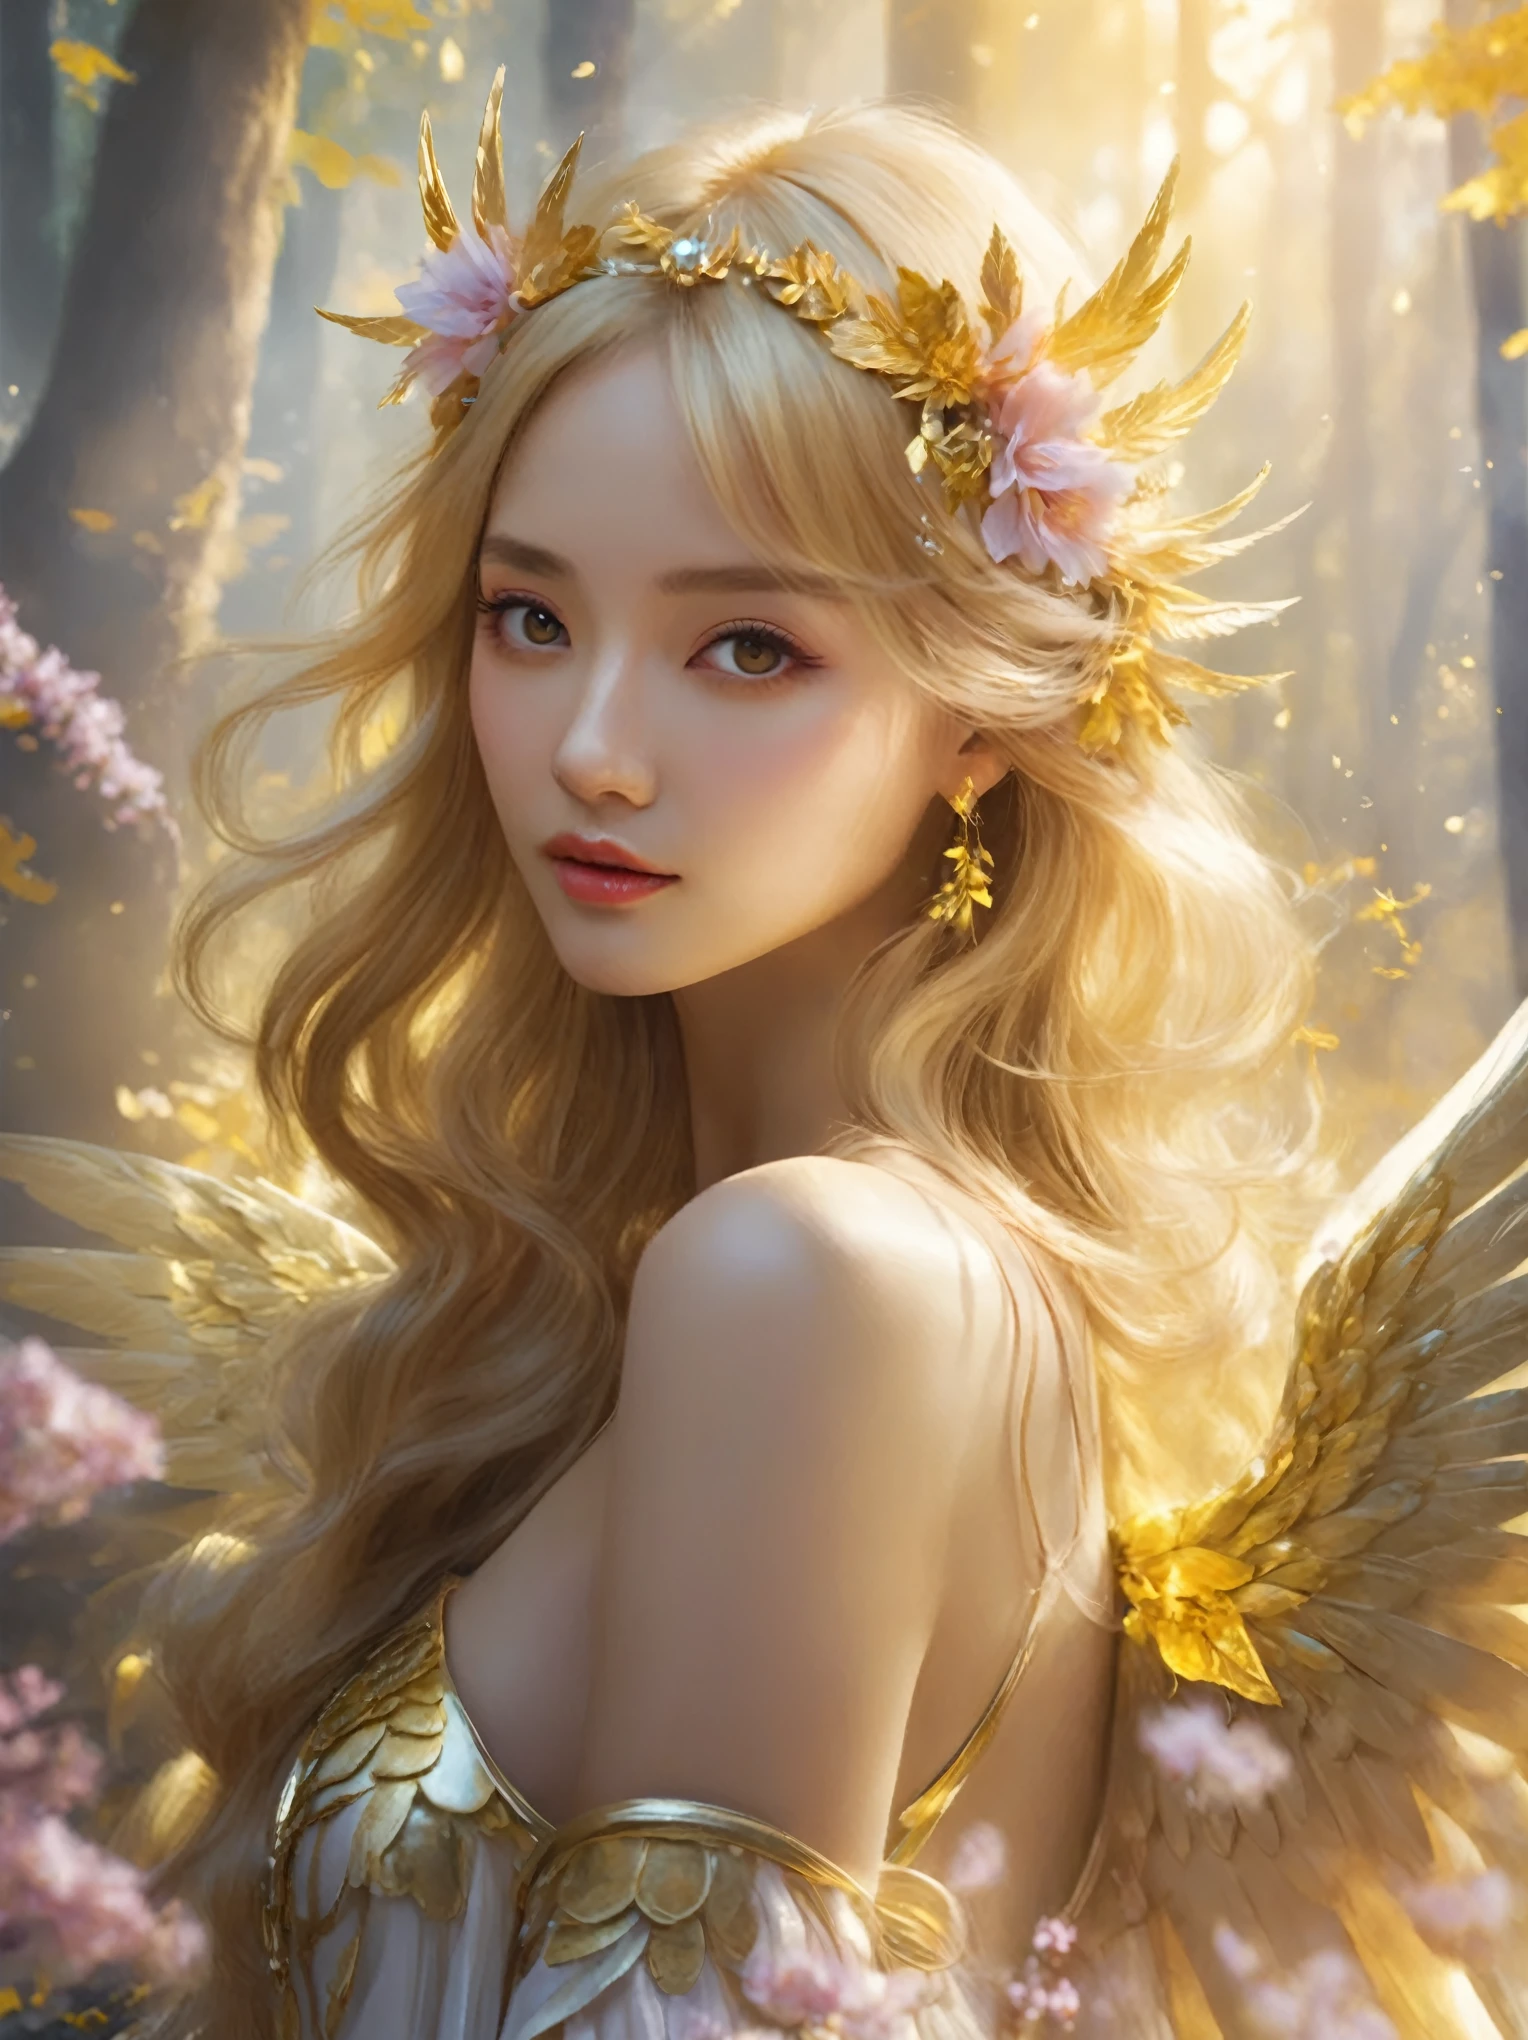 ผู้หญิงที่สวมมงกุฏดอกไม้และปีกในป่าสีทอง, of นางฟ้าที่สวยงาม, สไตล์ศิลปะแฟนตาซี, นางฟ้าที่สวยงาม, of an นางฟ้าที่สวยงาม girl, ศิลปะแฟนตาซีที่สวยงาม, โดย แจน เจ., ศิลปะแฟนตาซีดิจิทัล ), portrait of a นางฟ้าที่สวยงาม, ศิลปะแฟนตาซีที่สวยงาม portrait, งานศิลปะที่มีรายละเอียดคุณภาพสูง 8k, ศิลปะแฟนตาซีที่น่าทึ่ง, ปีกสีทองบนศีรษะ, very ศิลปะแฟนตาซีที่สวยงาม